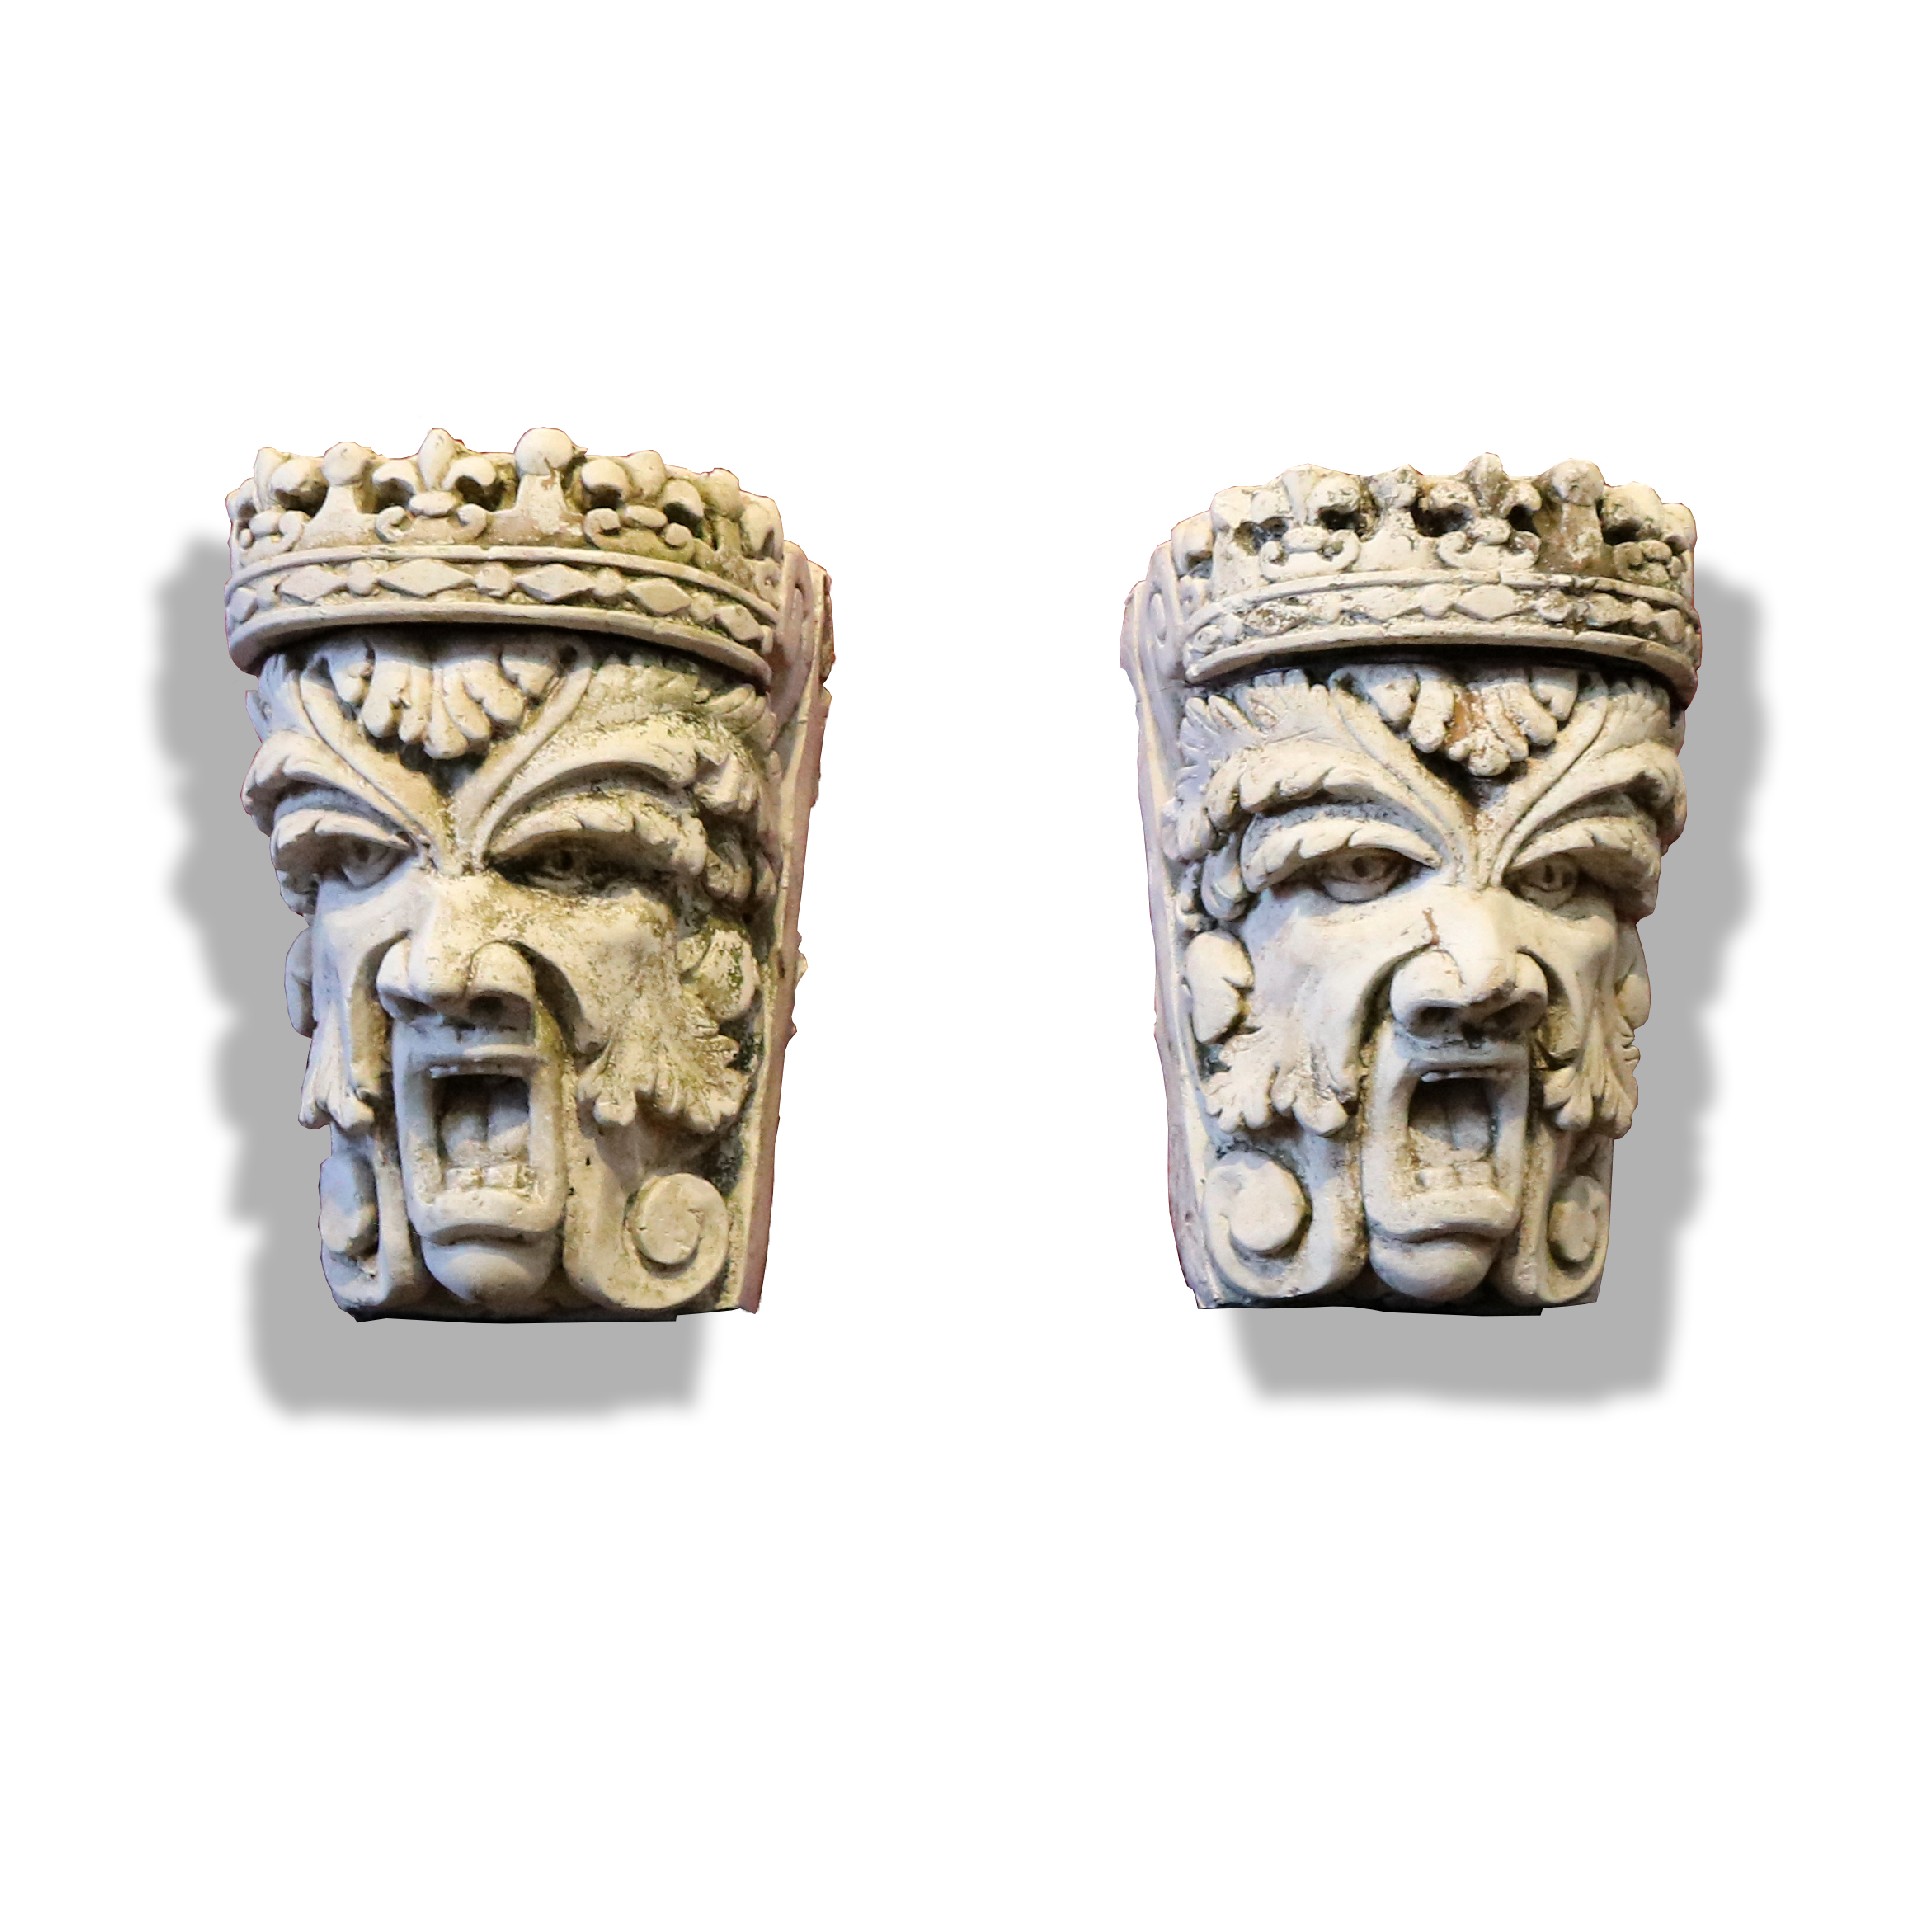 Antica coppia di mascheroni in pietra. - Mascheroni Antichi - Arredo Giardino - Prodotti - Antichità Fiorillo